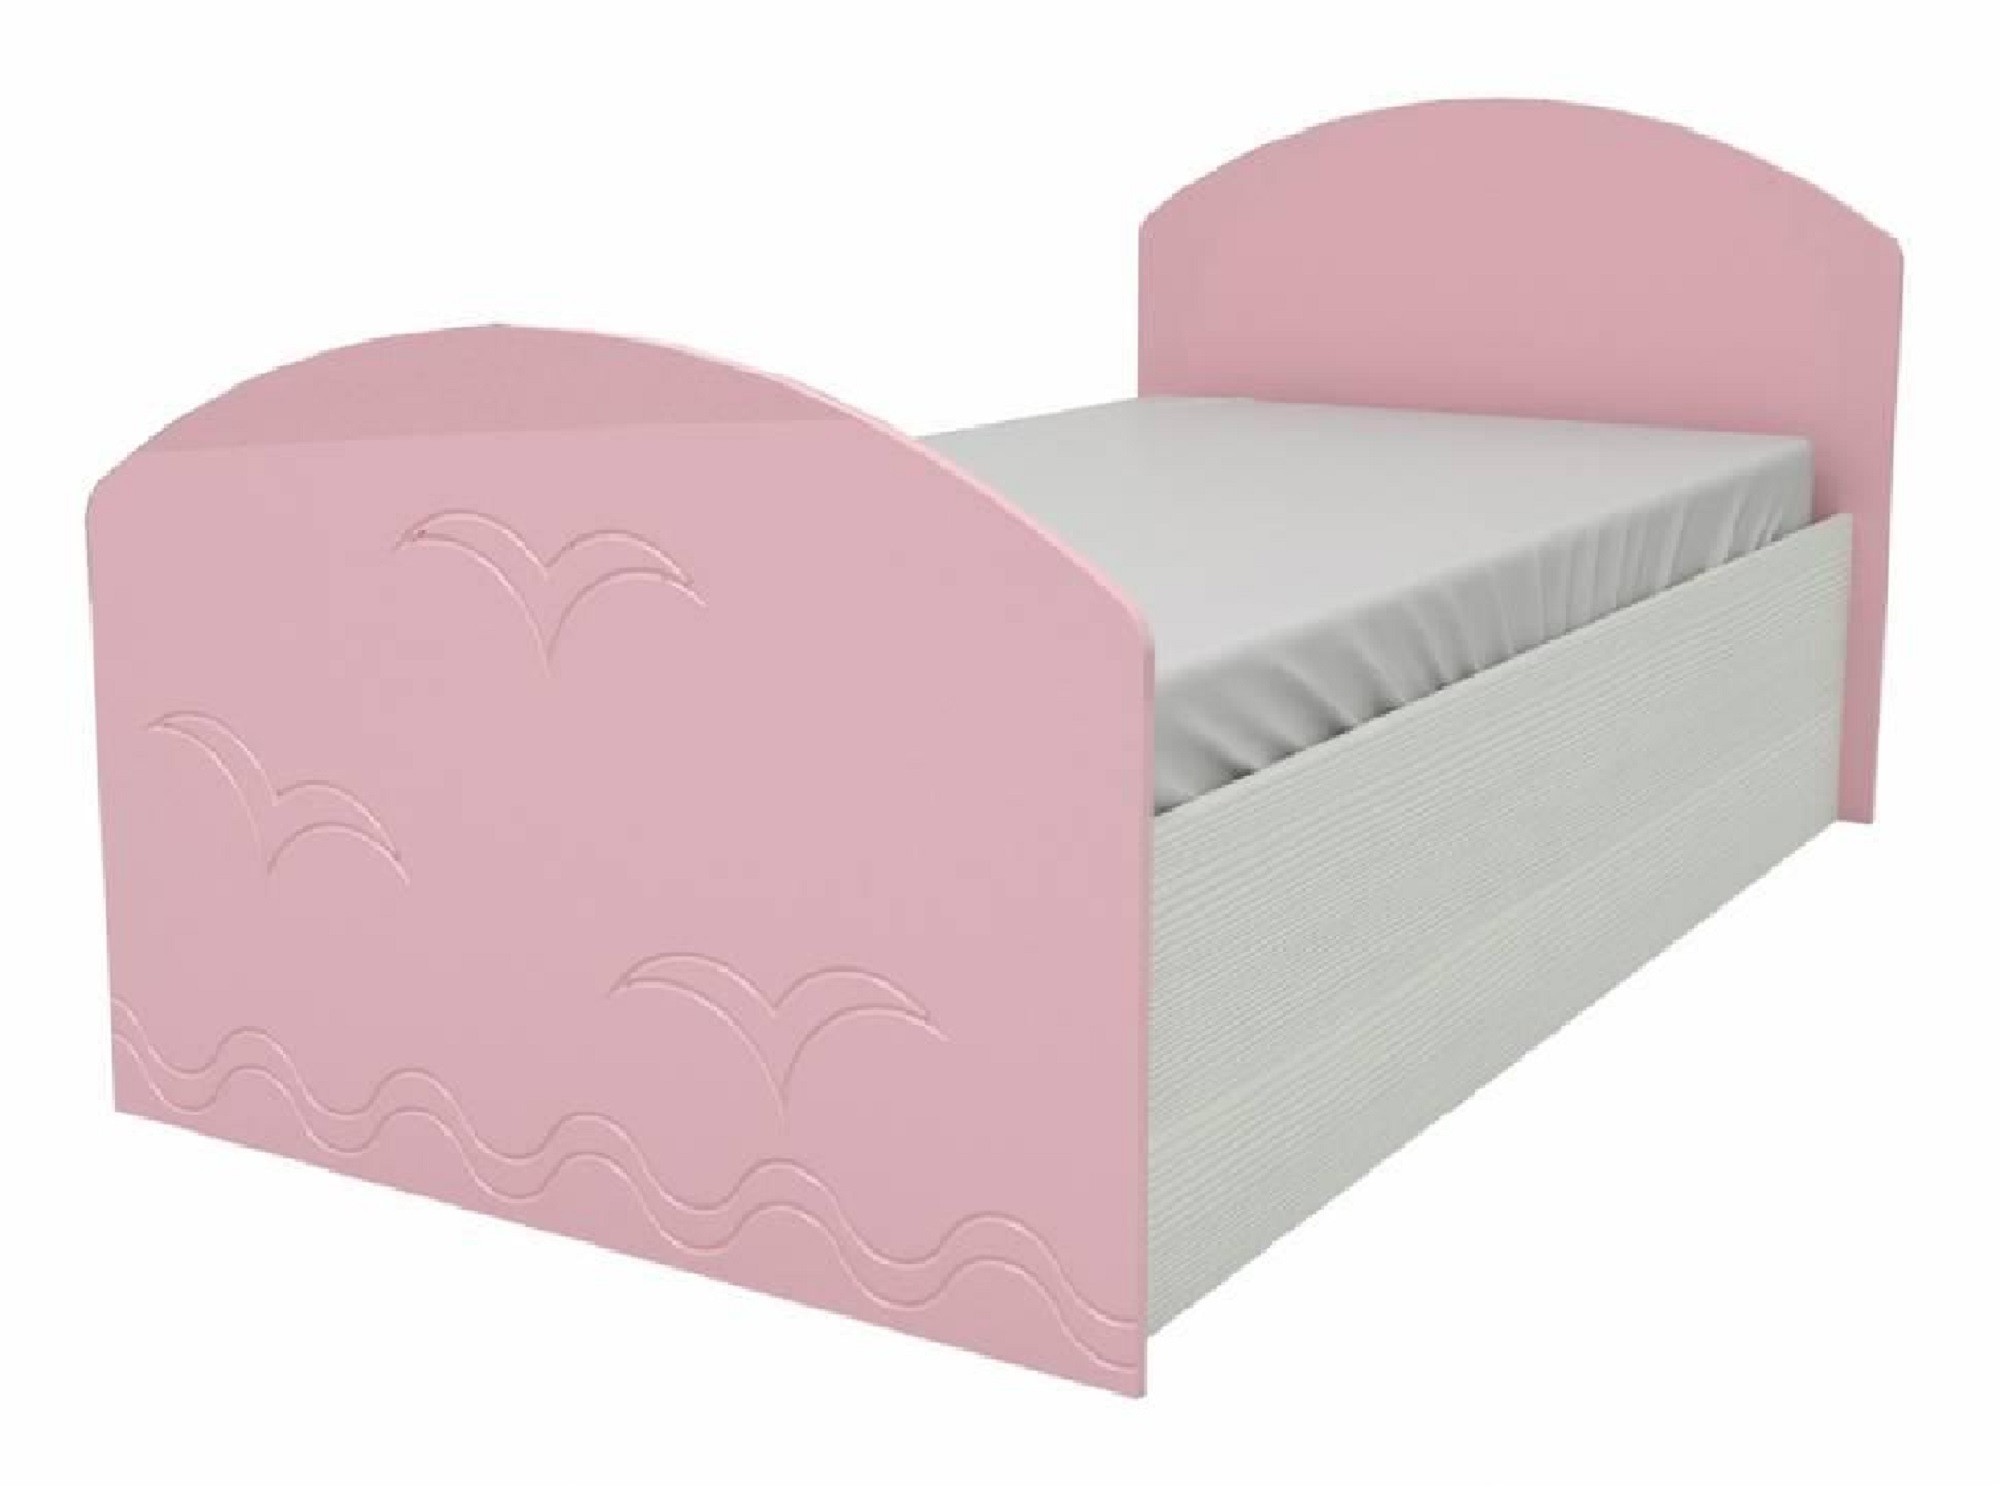 Юниор-2 Детская кровать 80, металлик (Розовый металлик, Дуб белёный) Розовый металлик, МДФ, ЛДСП юниор 2 детская кровать 80 матовый розовый дуб белёный розовый мдф лдсп